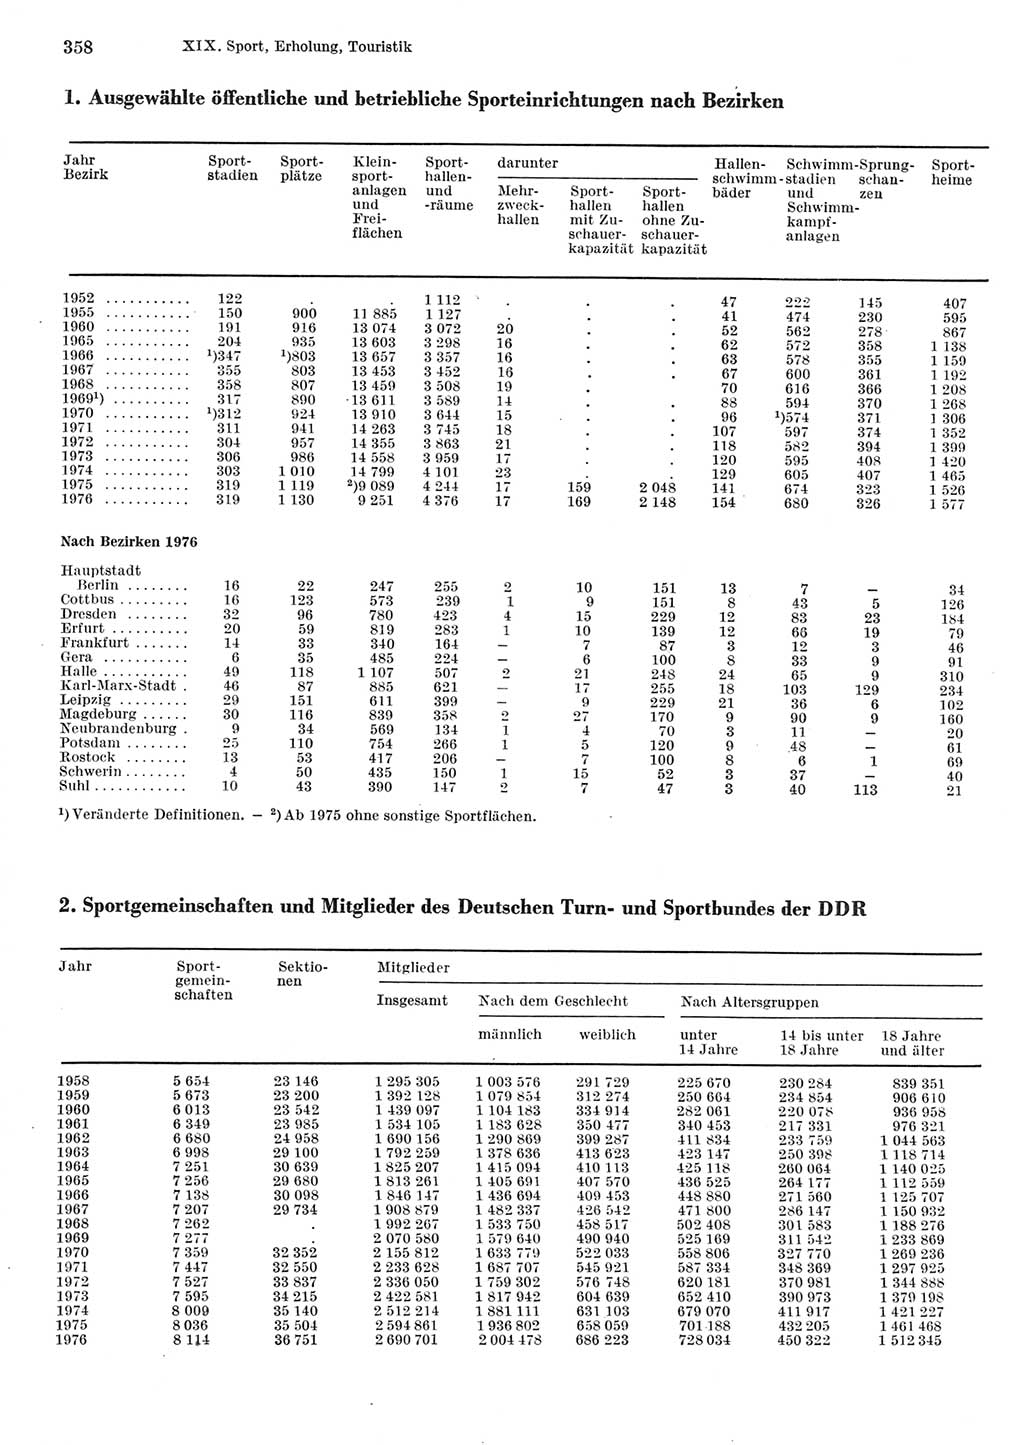 Statistisches Jahrbuch der Deutschen Demokratischen Republik (DDR) 1977, Seite 358 (Stat. Jb. DDR 1977, S. 358)